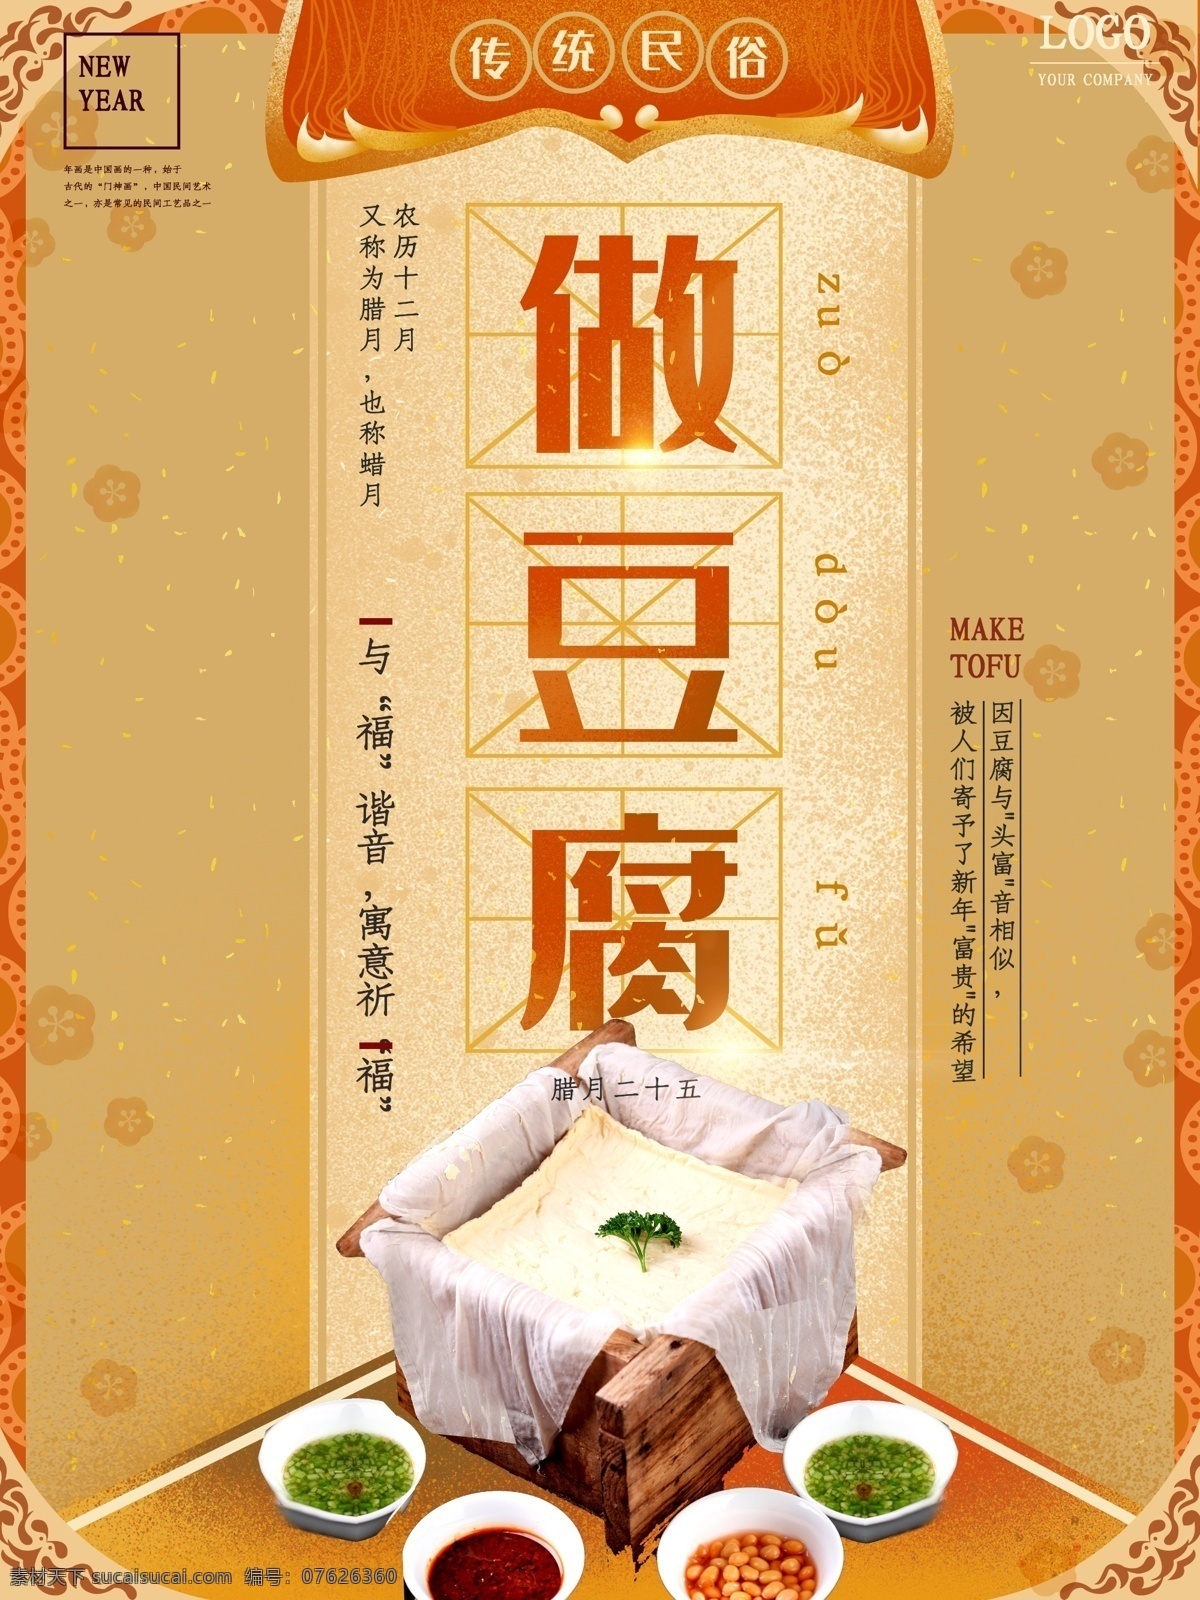 磨豆腐 豆腐文化 豆腐 只做豆腐 美食 饮食文化